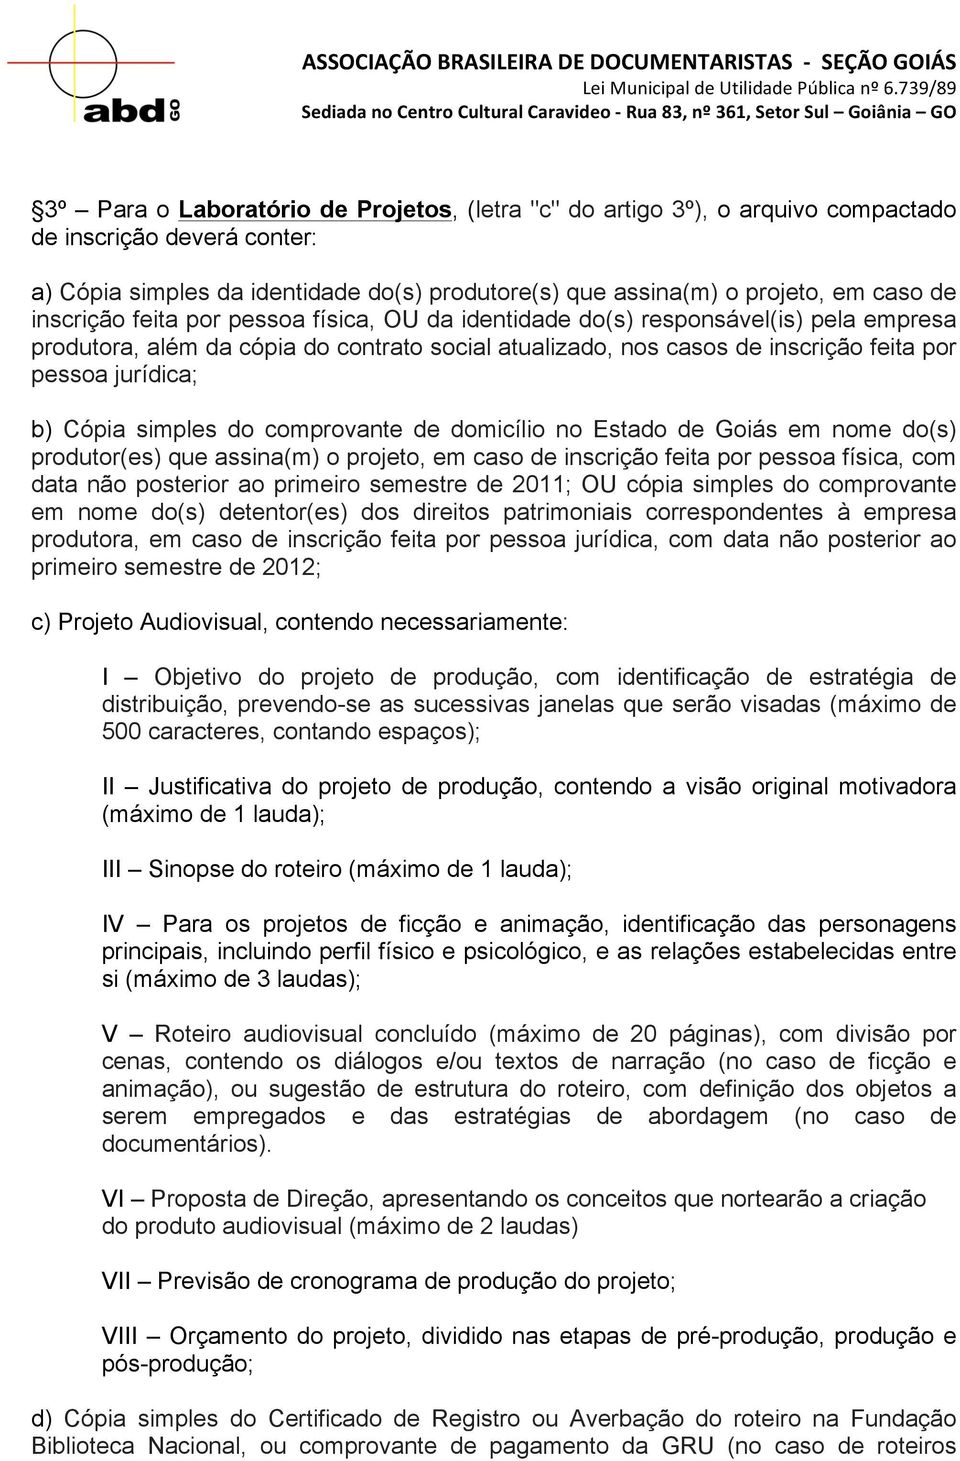 Cópia simples do comprovante de domicílio no Estado de Goiás em nome do(s) produtor(es) que assina(m) o projeto, em caso de inscrição feita por pessoa física, com data não posterior ao primeiro